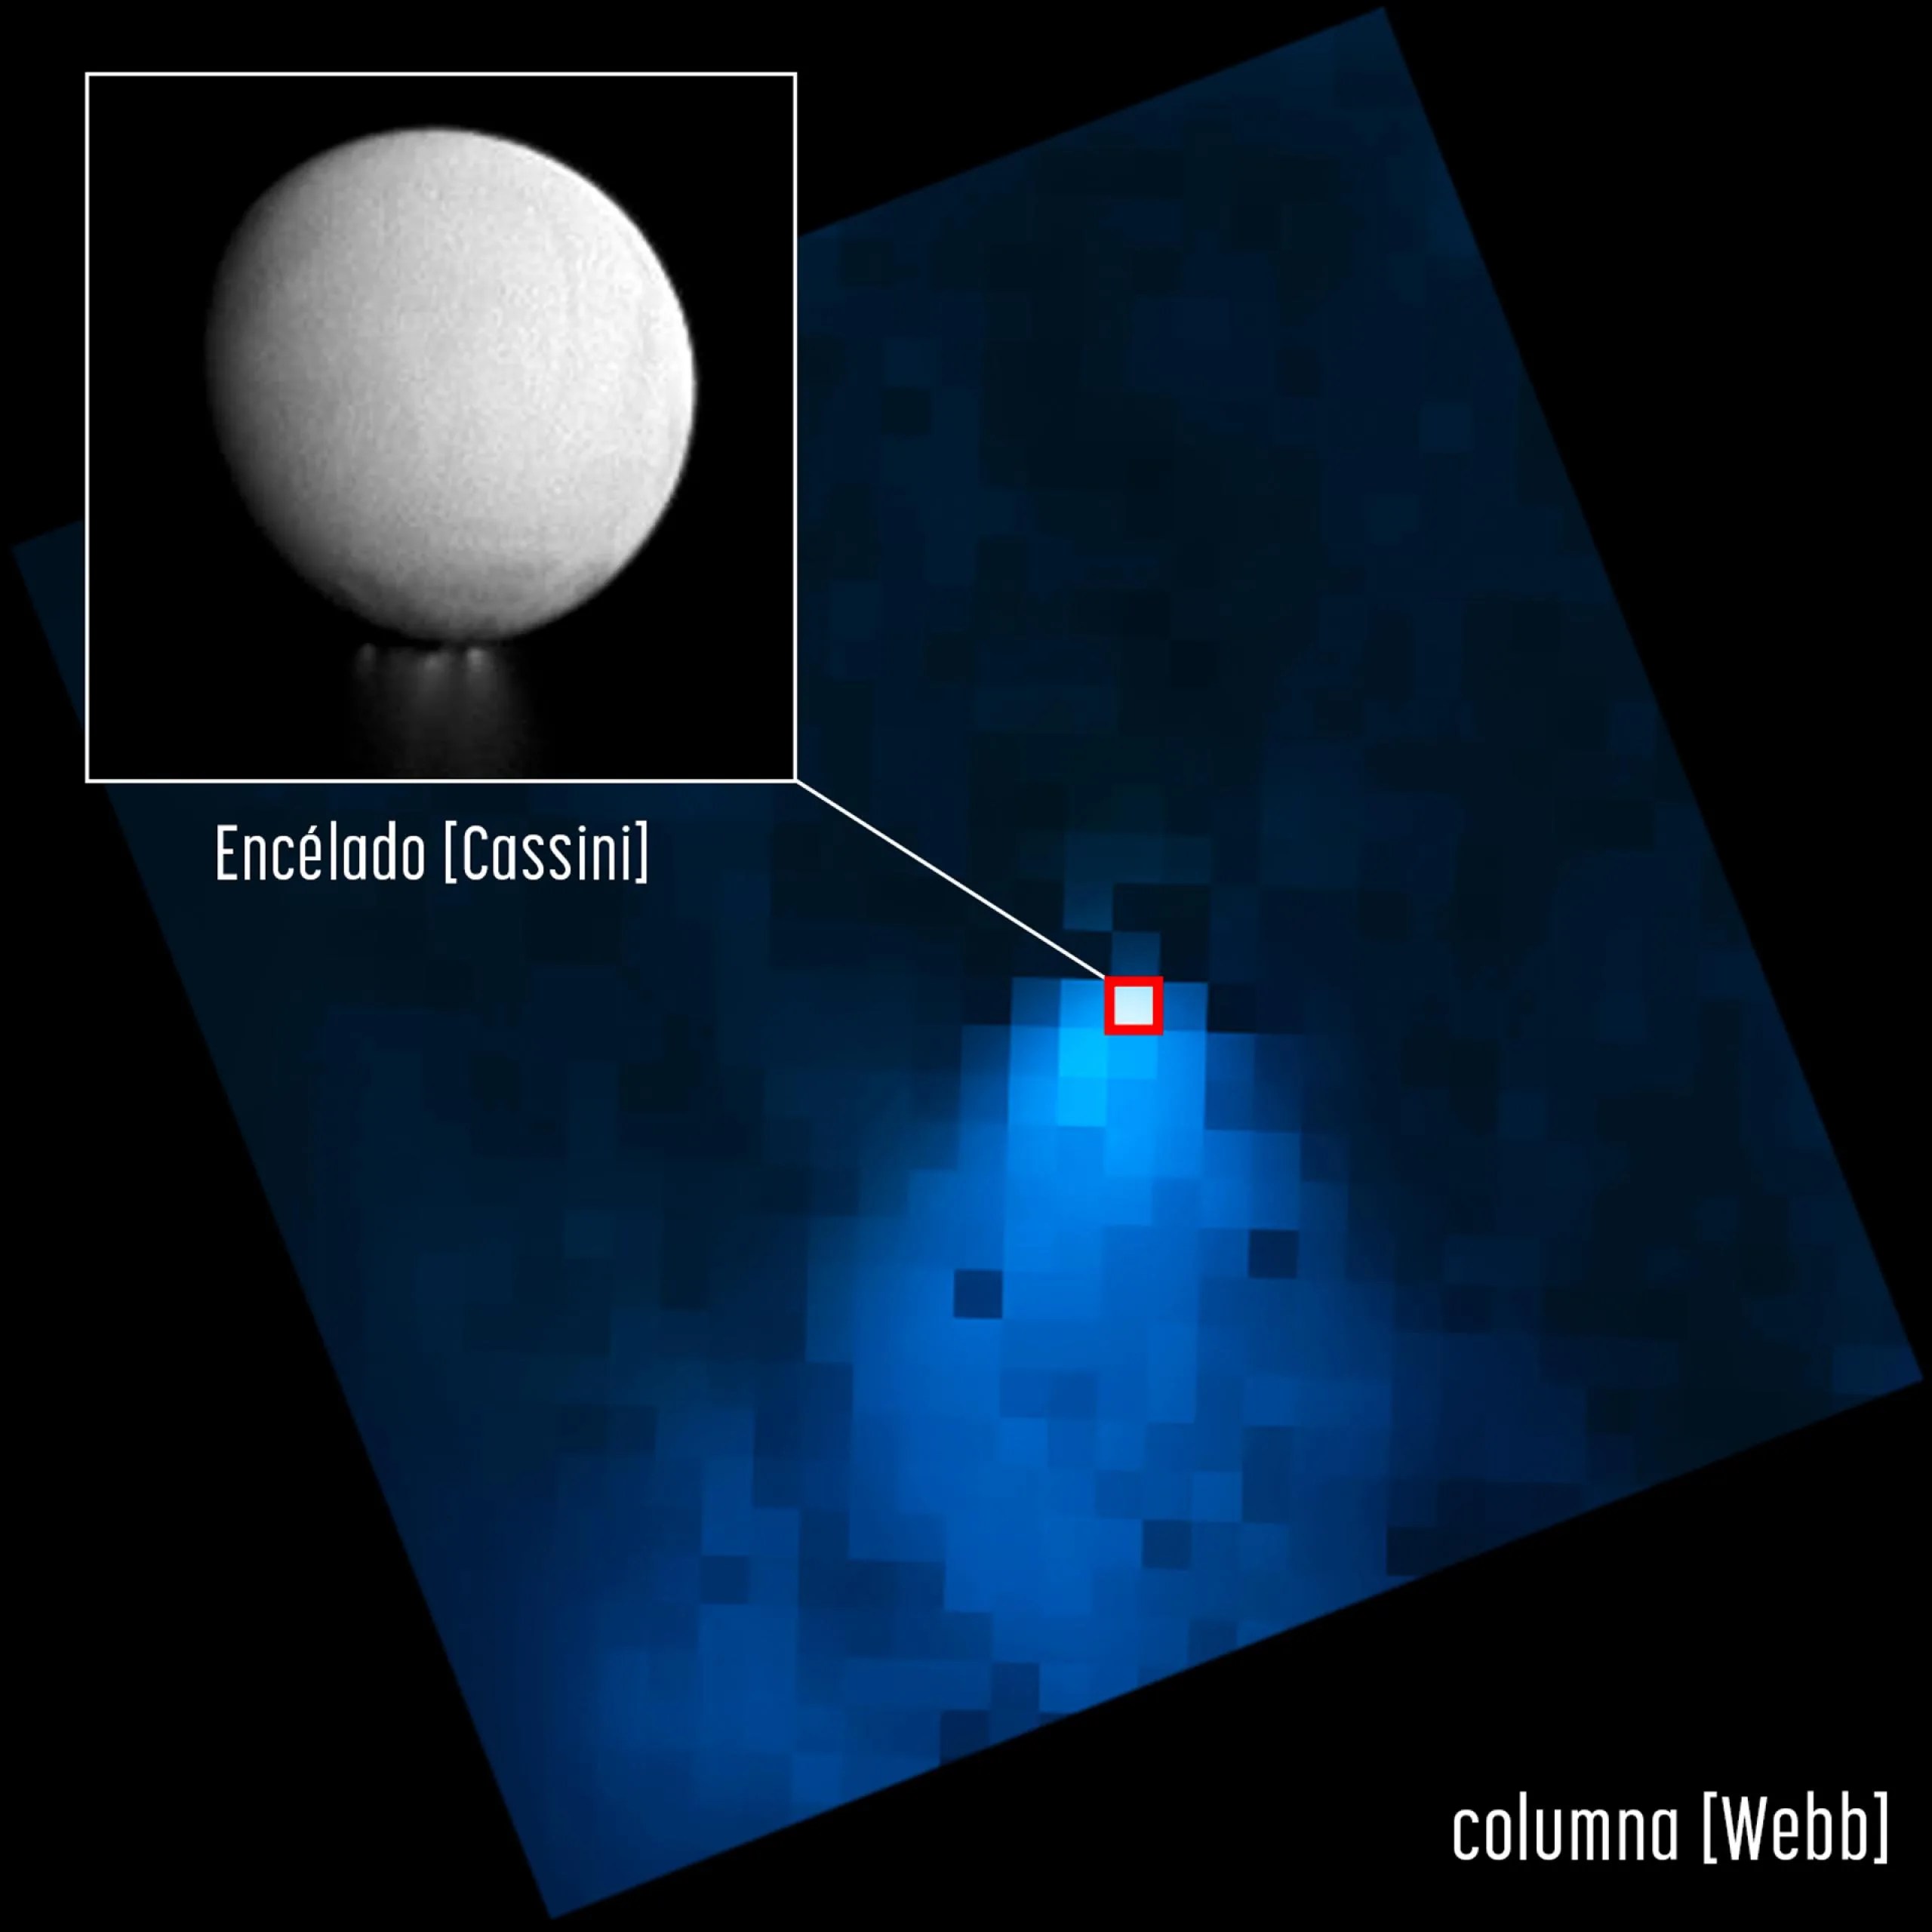 En esta imagen, el telescopio espacial James Webb de la NASA muestra una columna de vapor de agua que sale del polo sur de la luna Encélado de Saturno y se extiende por una distancia 20 veces mayor que el tamaño de la luna misma. El recuadro, una imagen del orbitador Cassini, enfatiza lo pequeña que se ve Encélado en la imagen de Webb en comparación con la columna de agua.